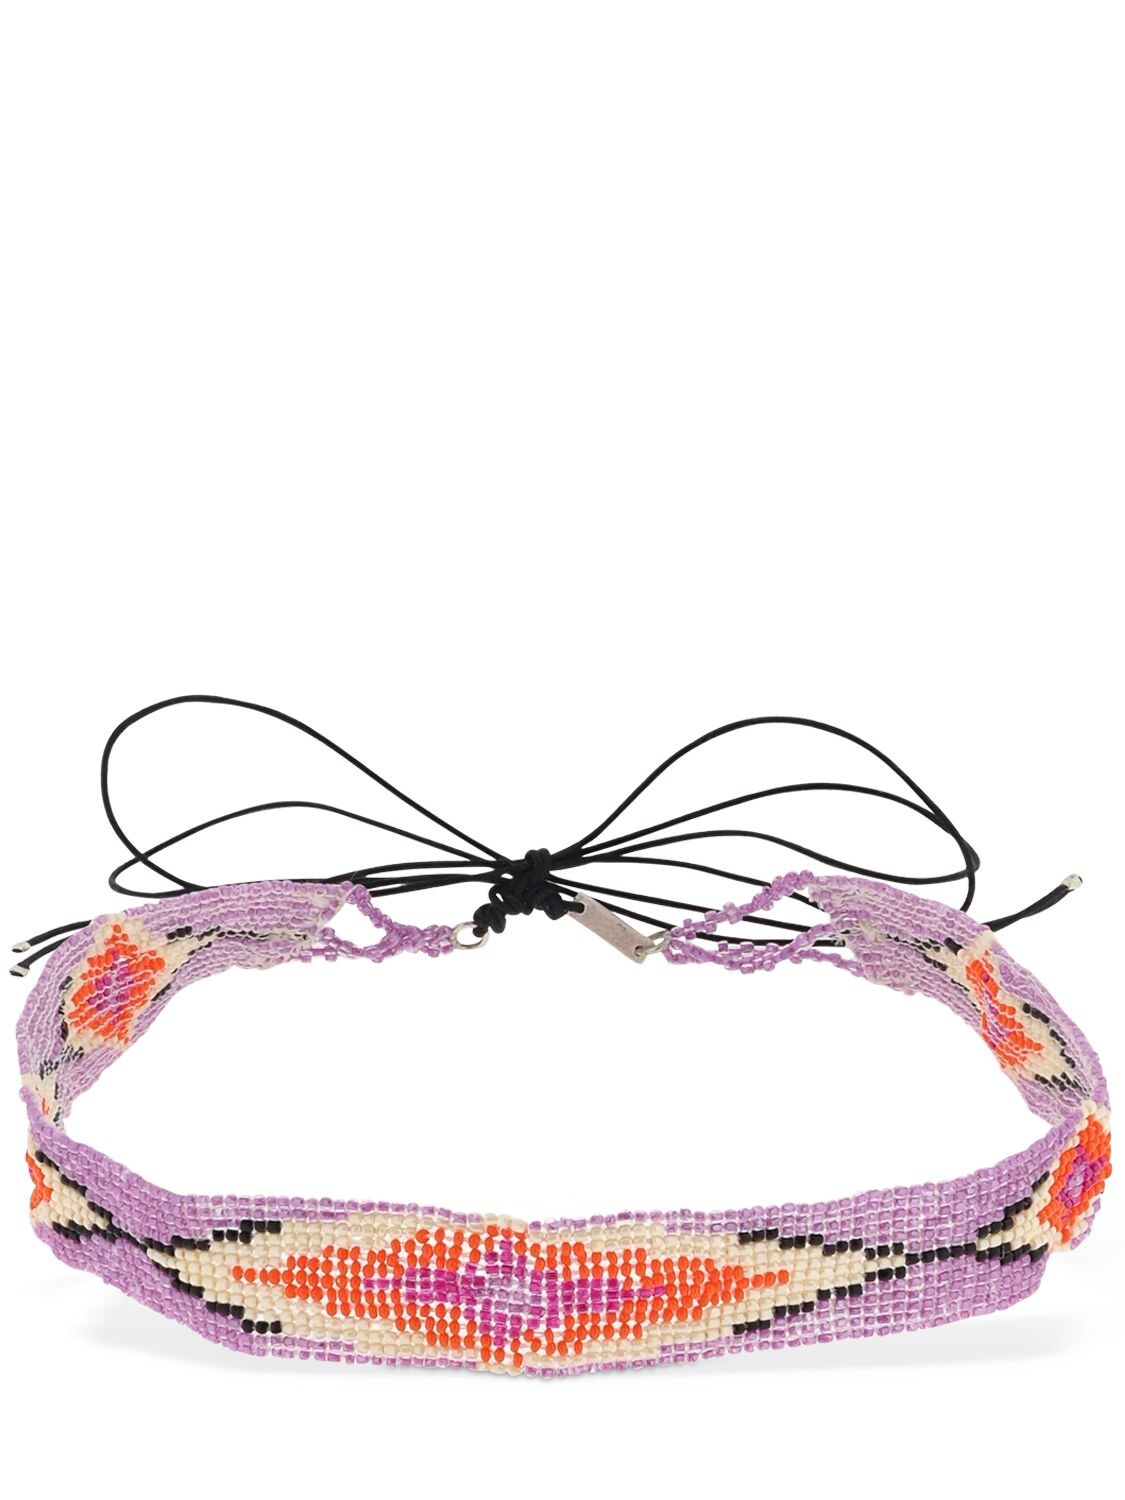 Isabel Marant Nova Beaded Headband In Multi,lilac